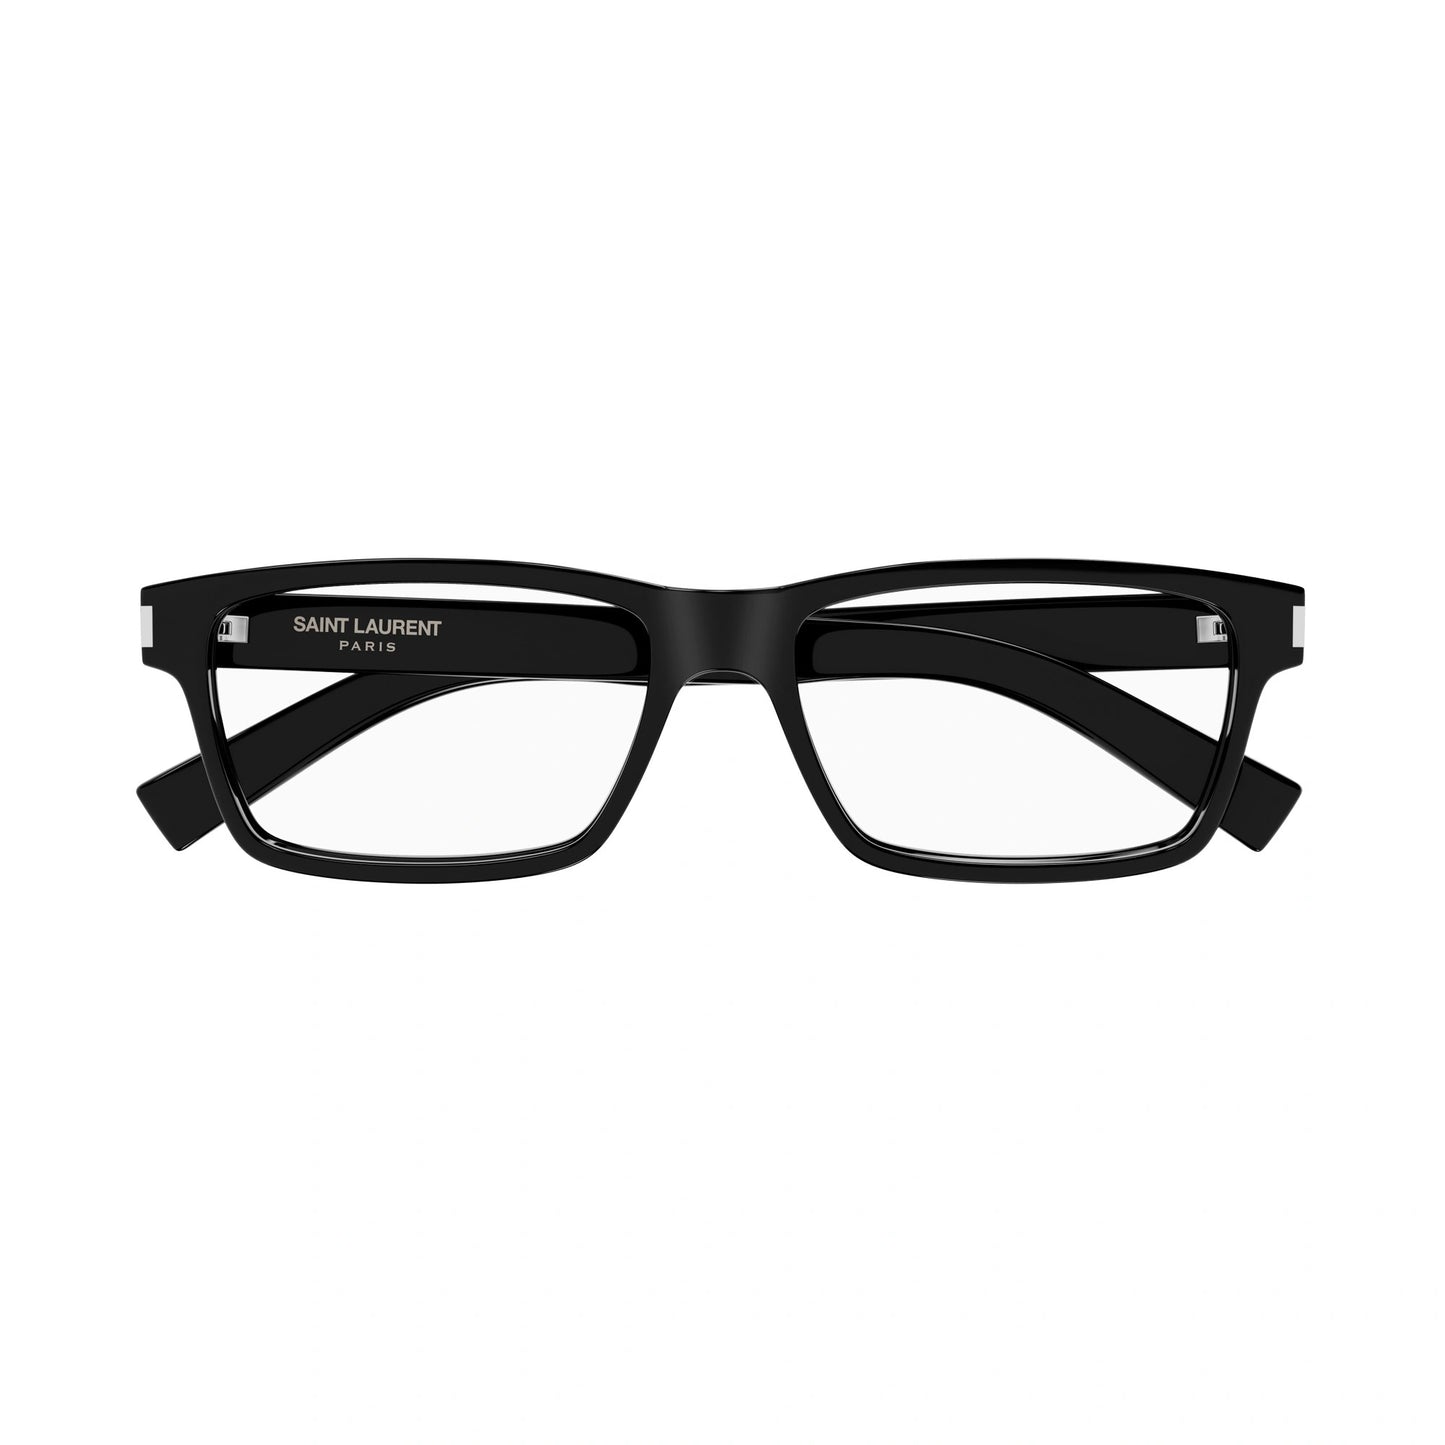 Yvest Saint Laurent SL-622-001 56mm New Eyeglasses